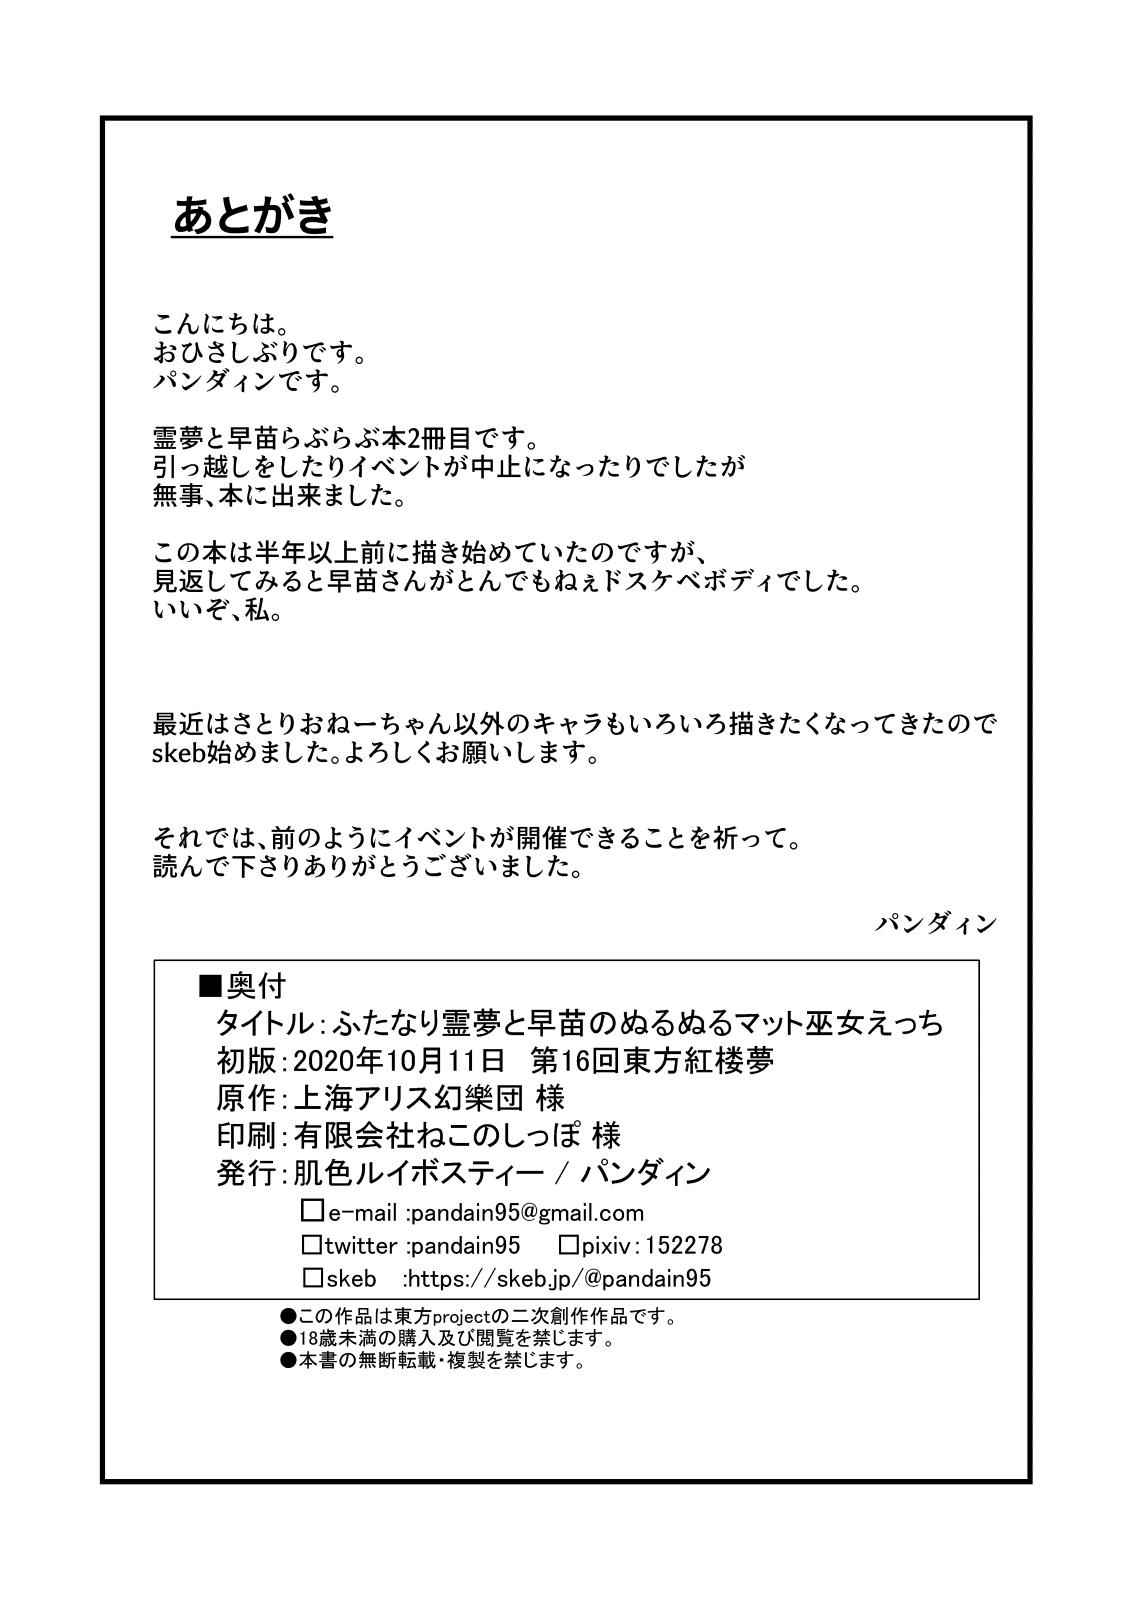 Sislovesme Futanari Reimu to Sanae no Nurunuru Mat Miko Ecchi - Touhou project Bottom - Page 18